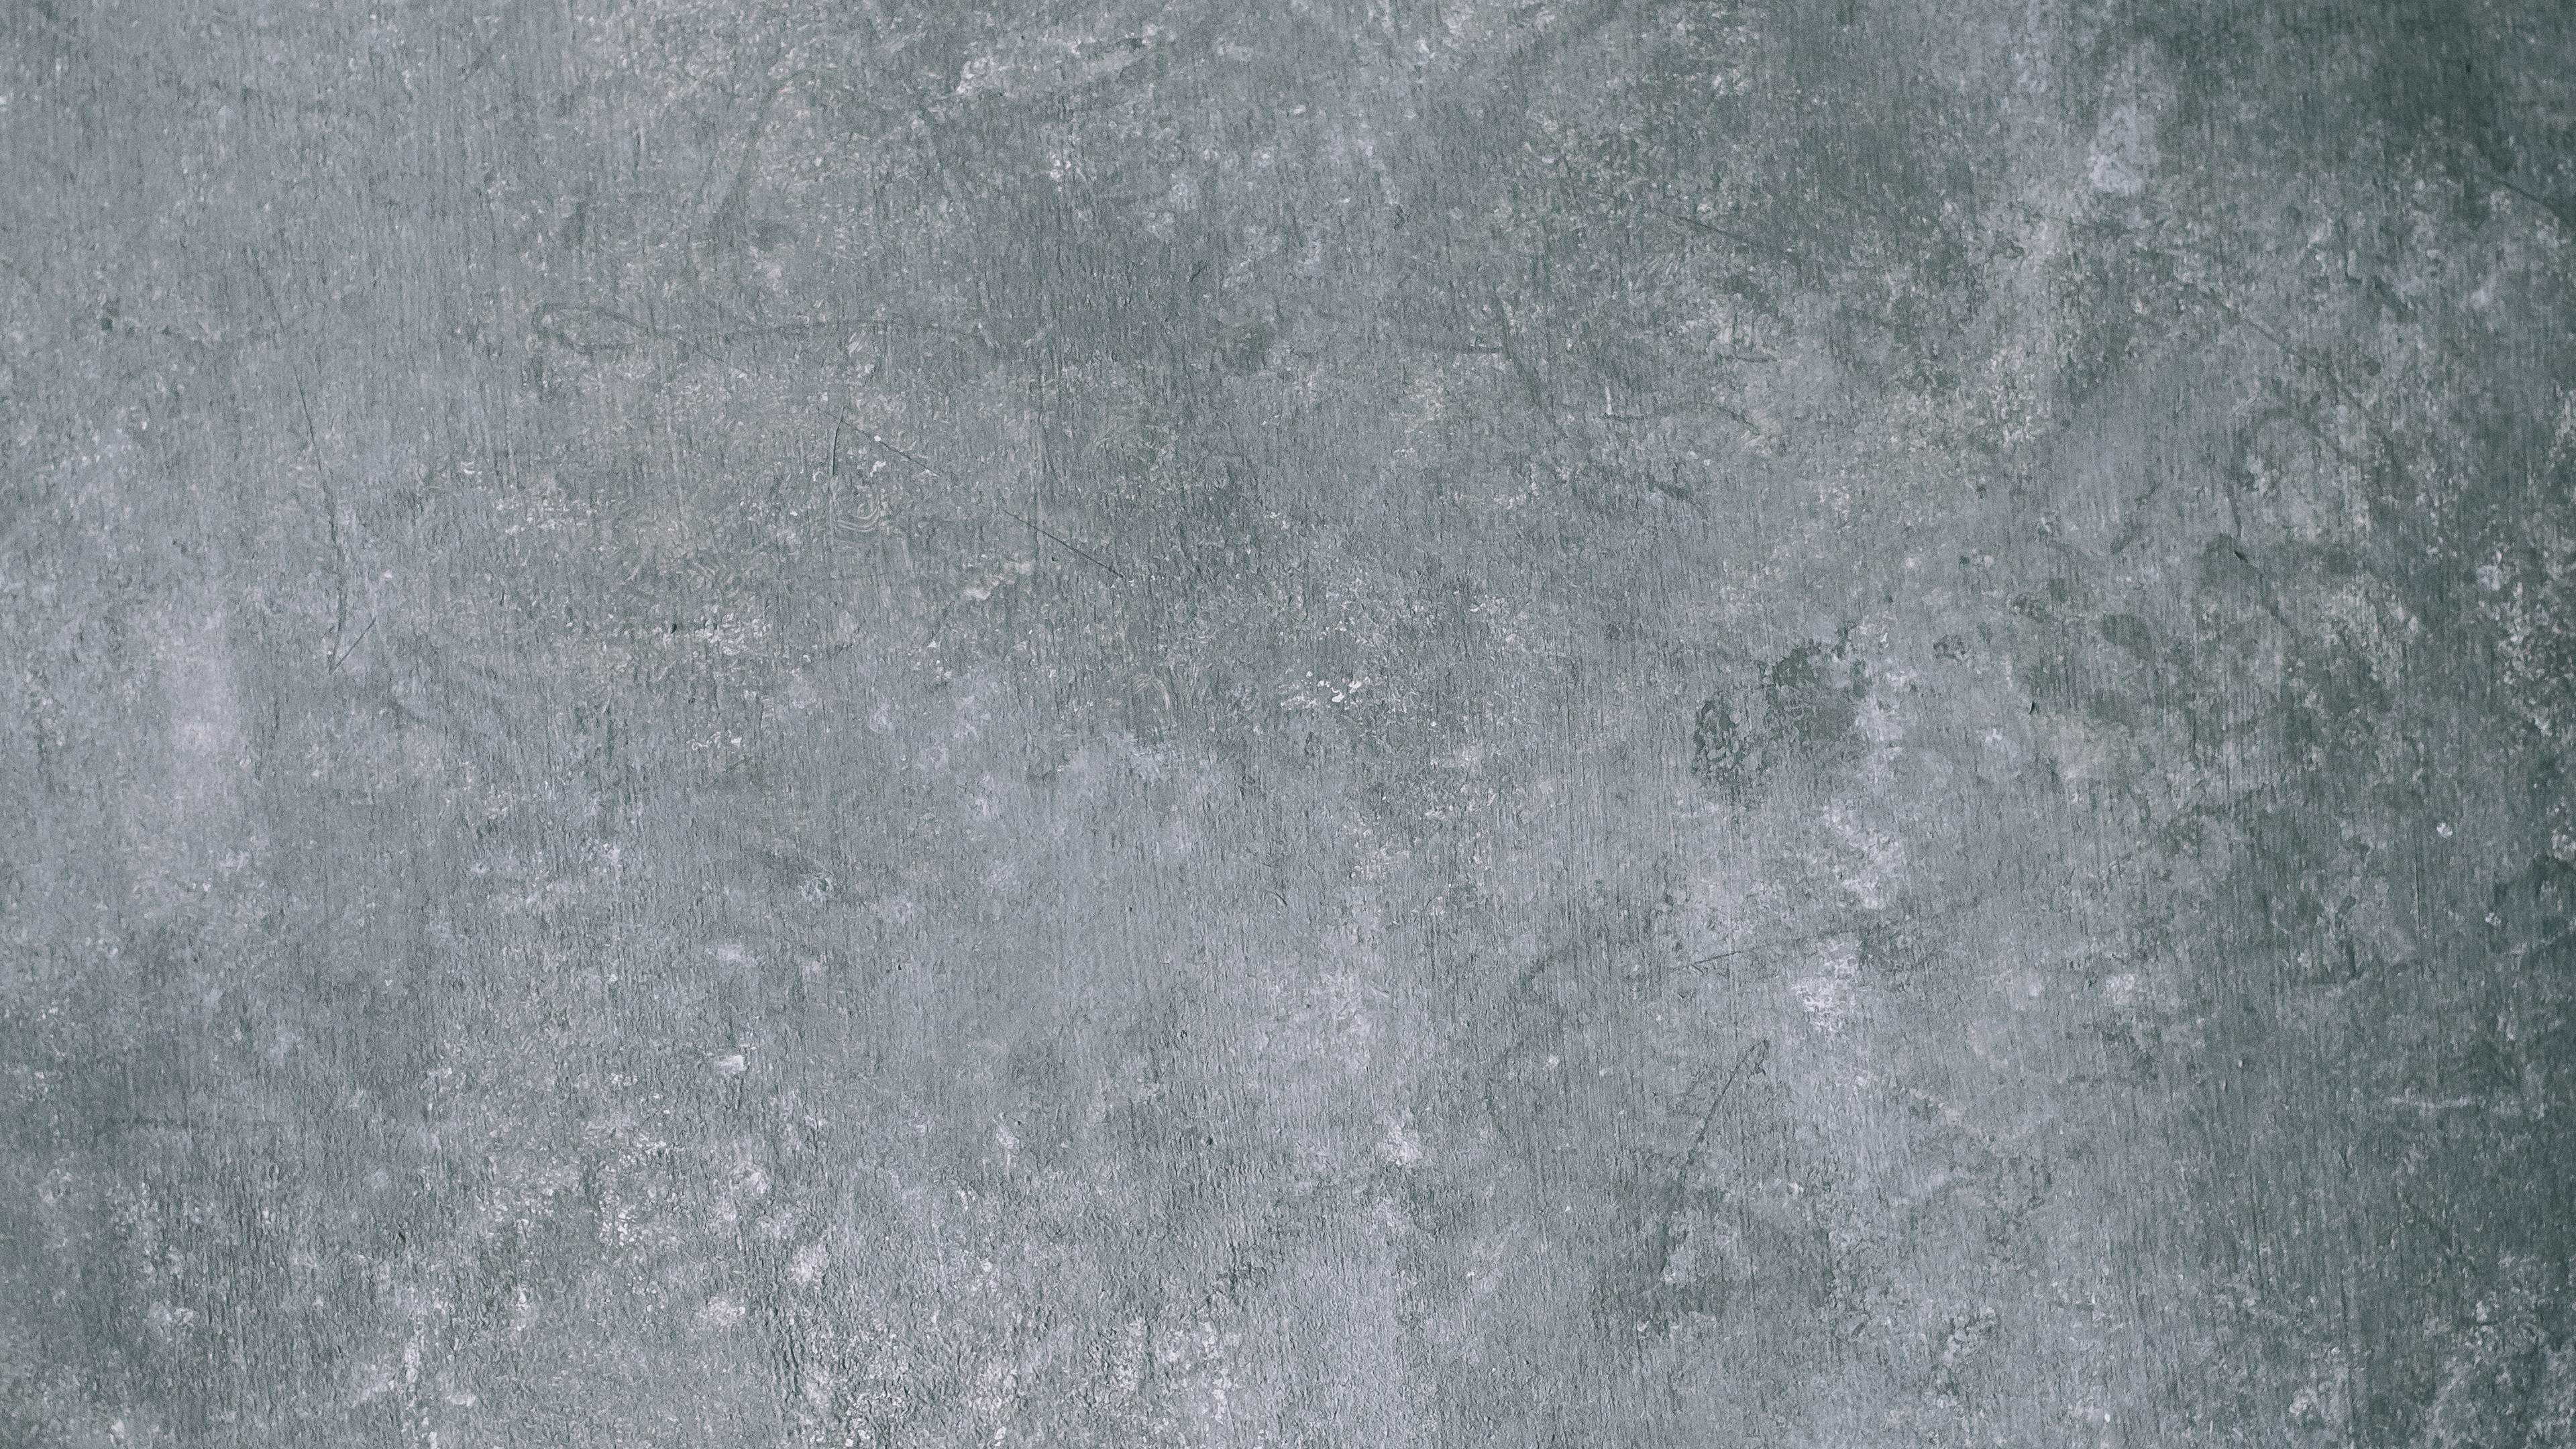 Wallpaper Concrete, Scuffs, Texture, Gray - Concrete Texture 4k , HD Wallpaper & Backgrounds